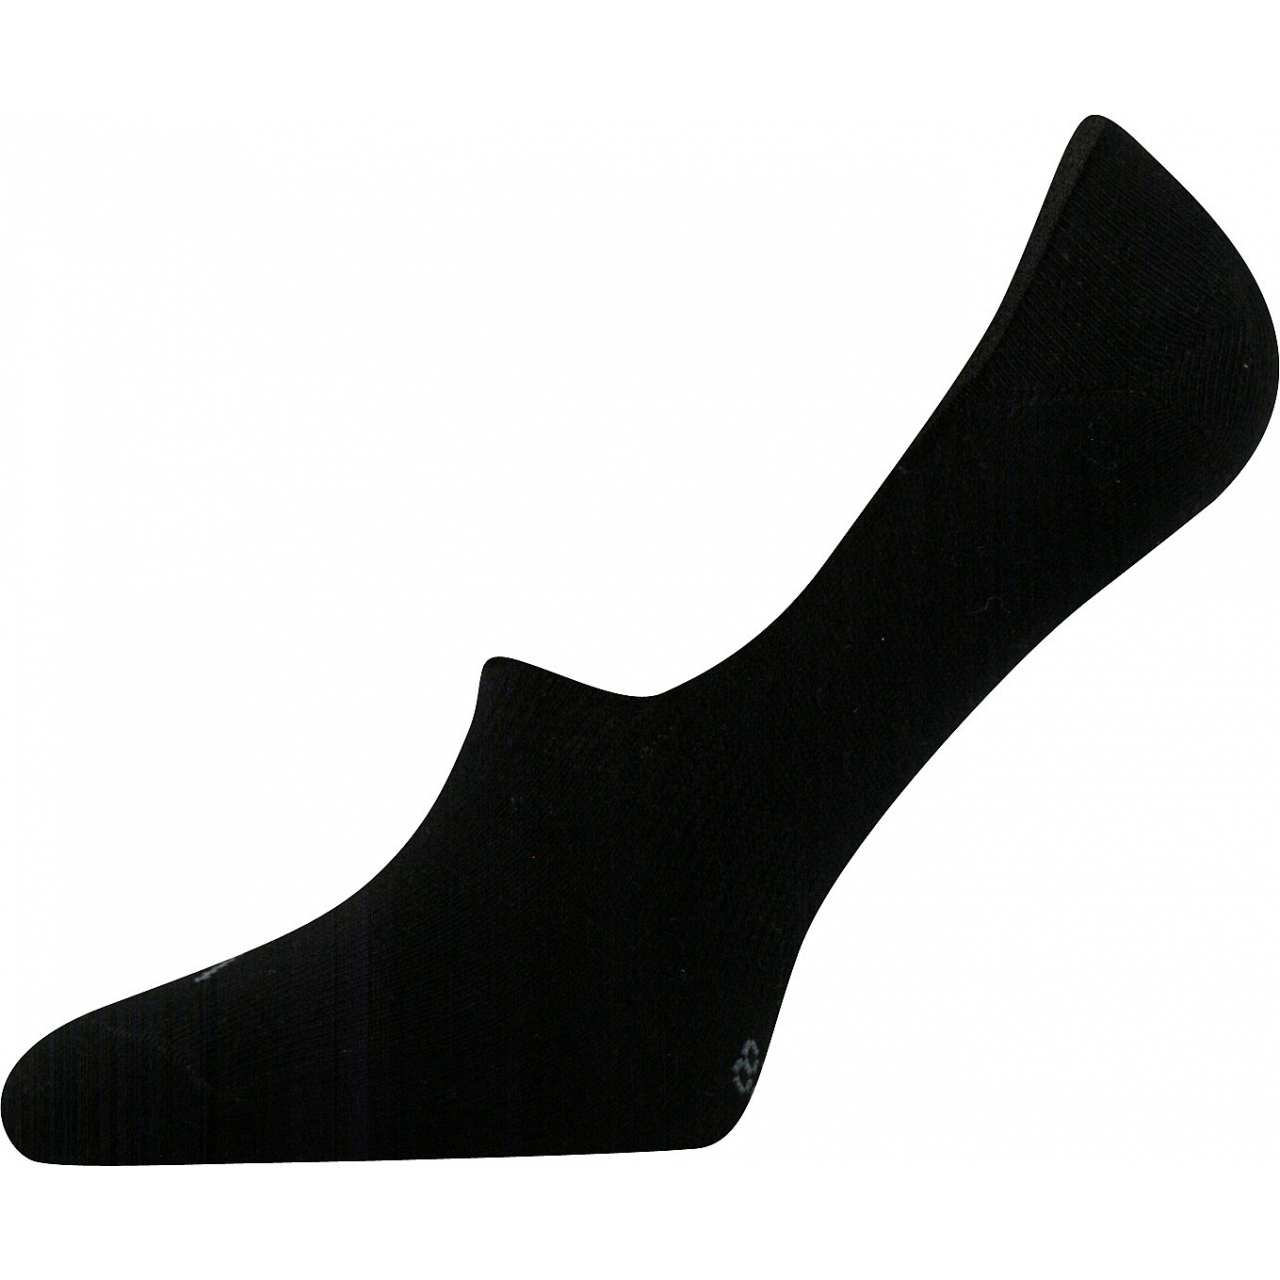 Ponožky unisex Voxx Verti - černé, 43-46